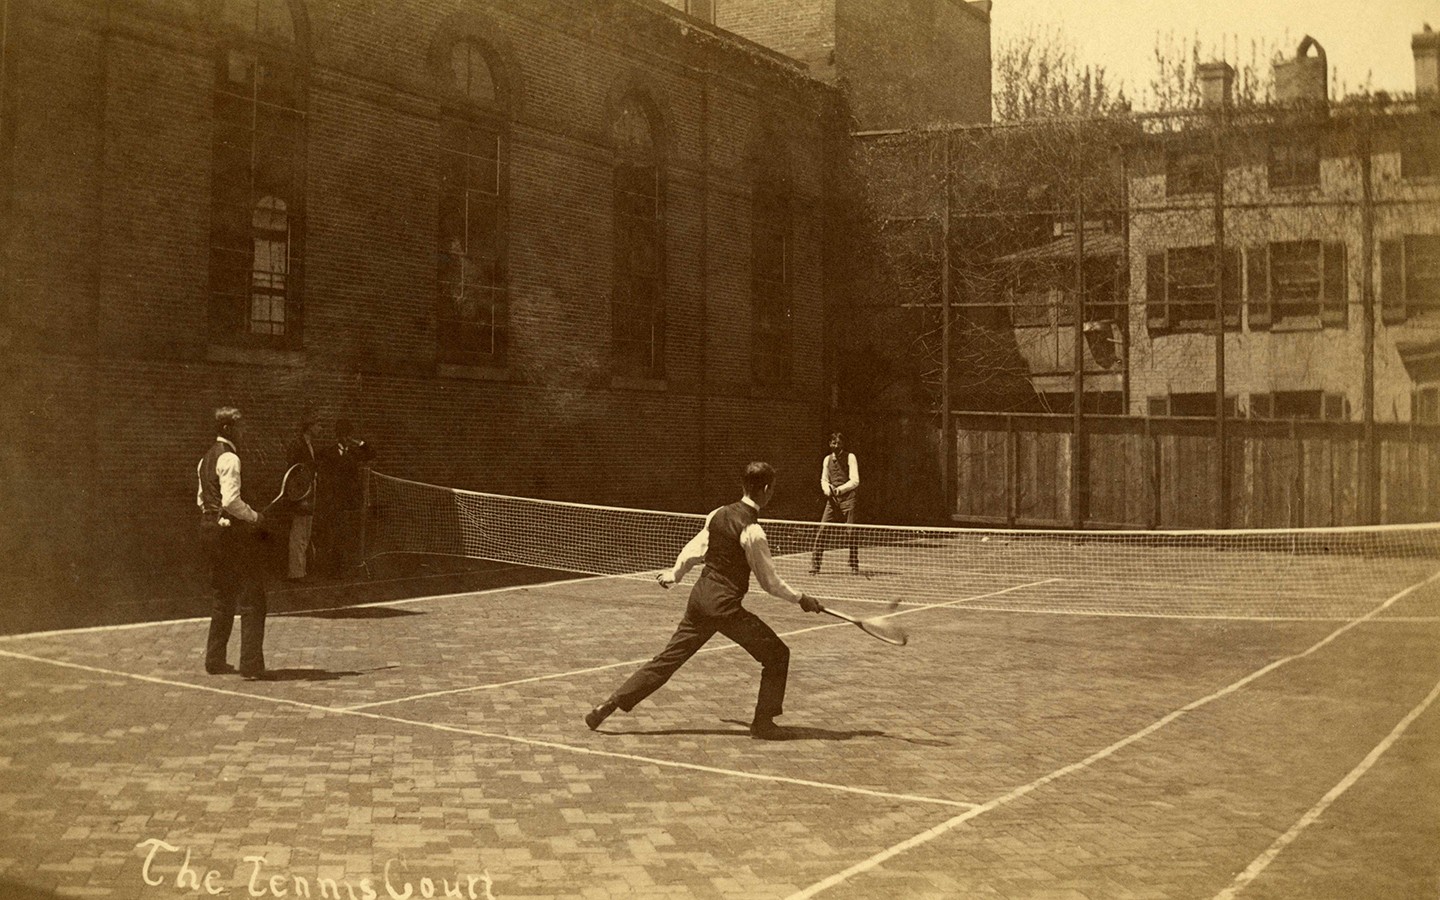 Men in suit vests play tennis